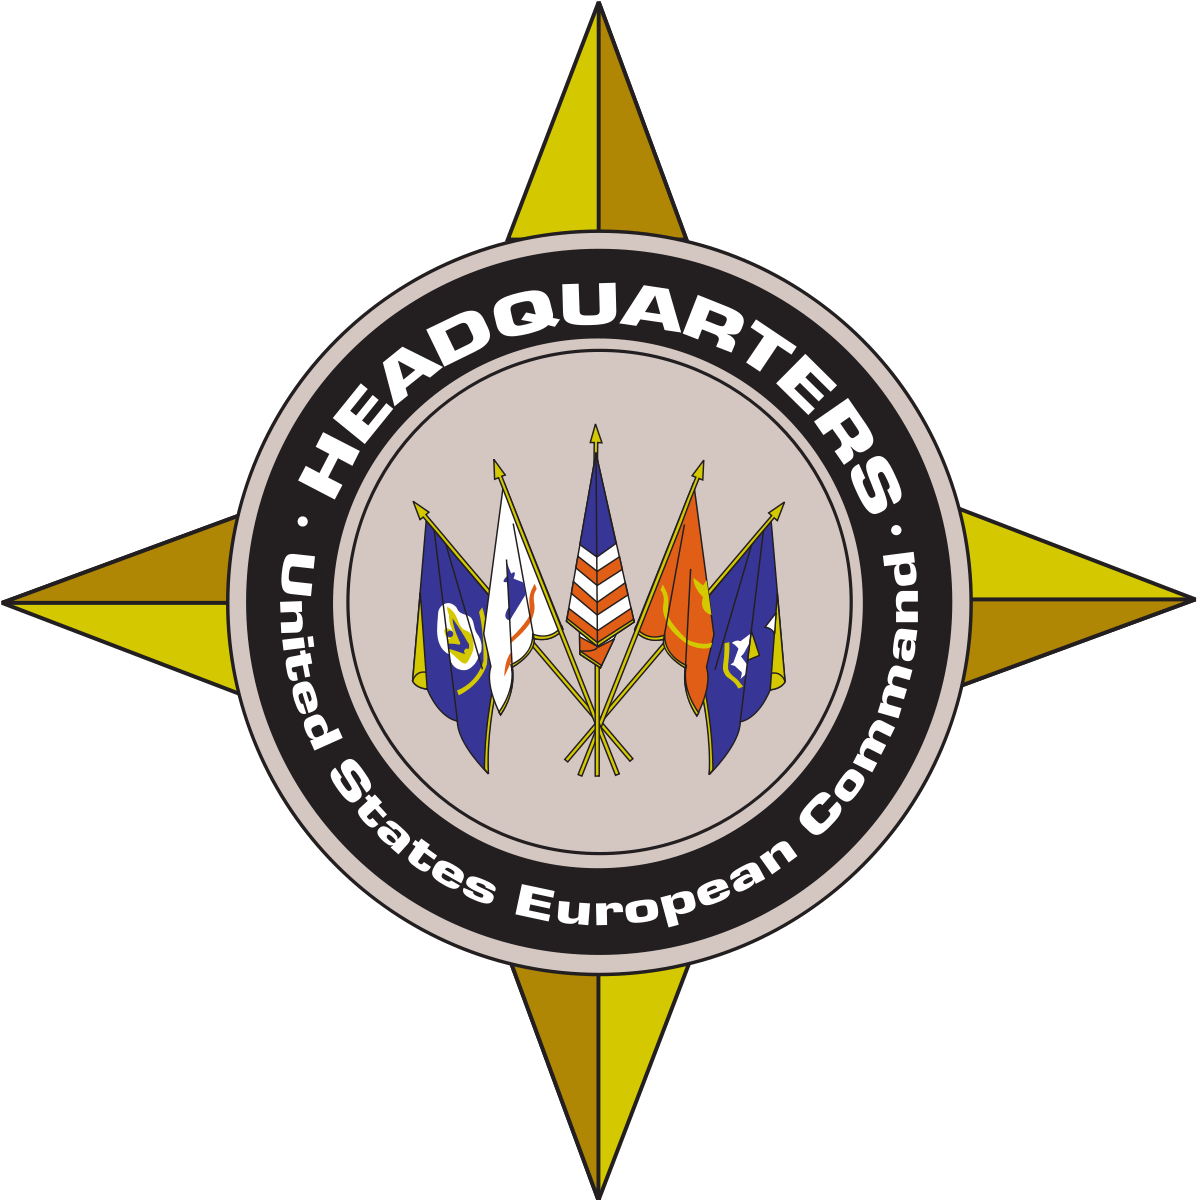 European Military Logo - United States European Command